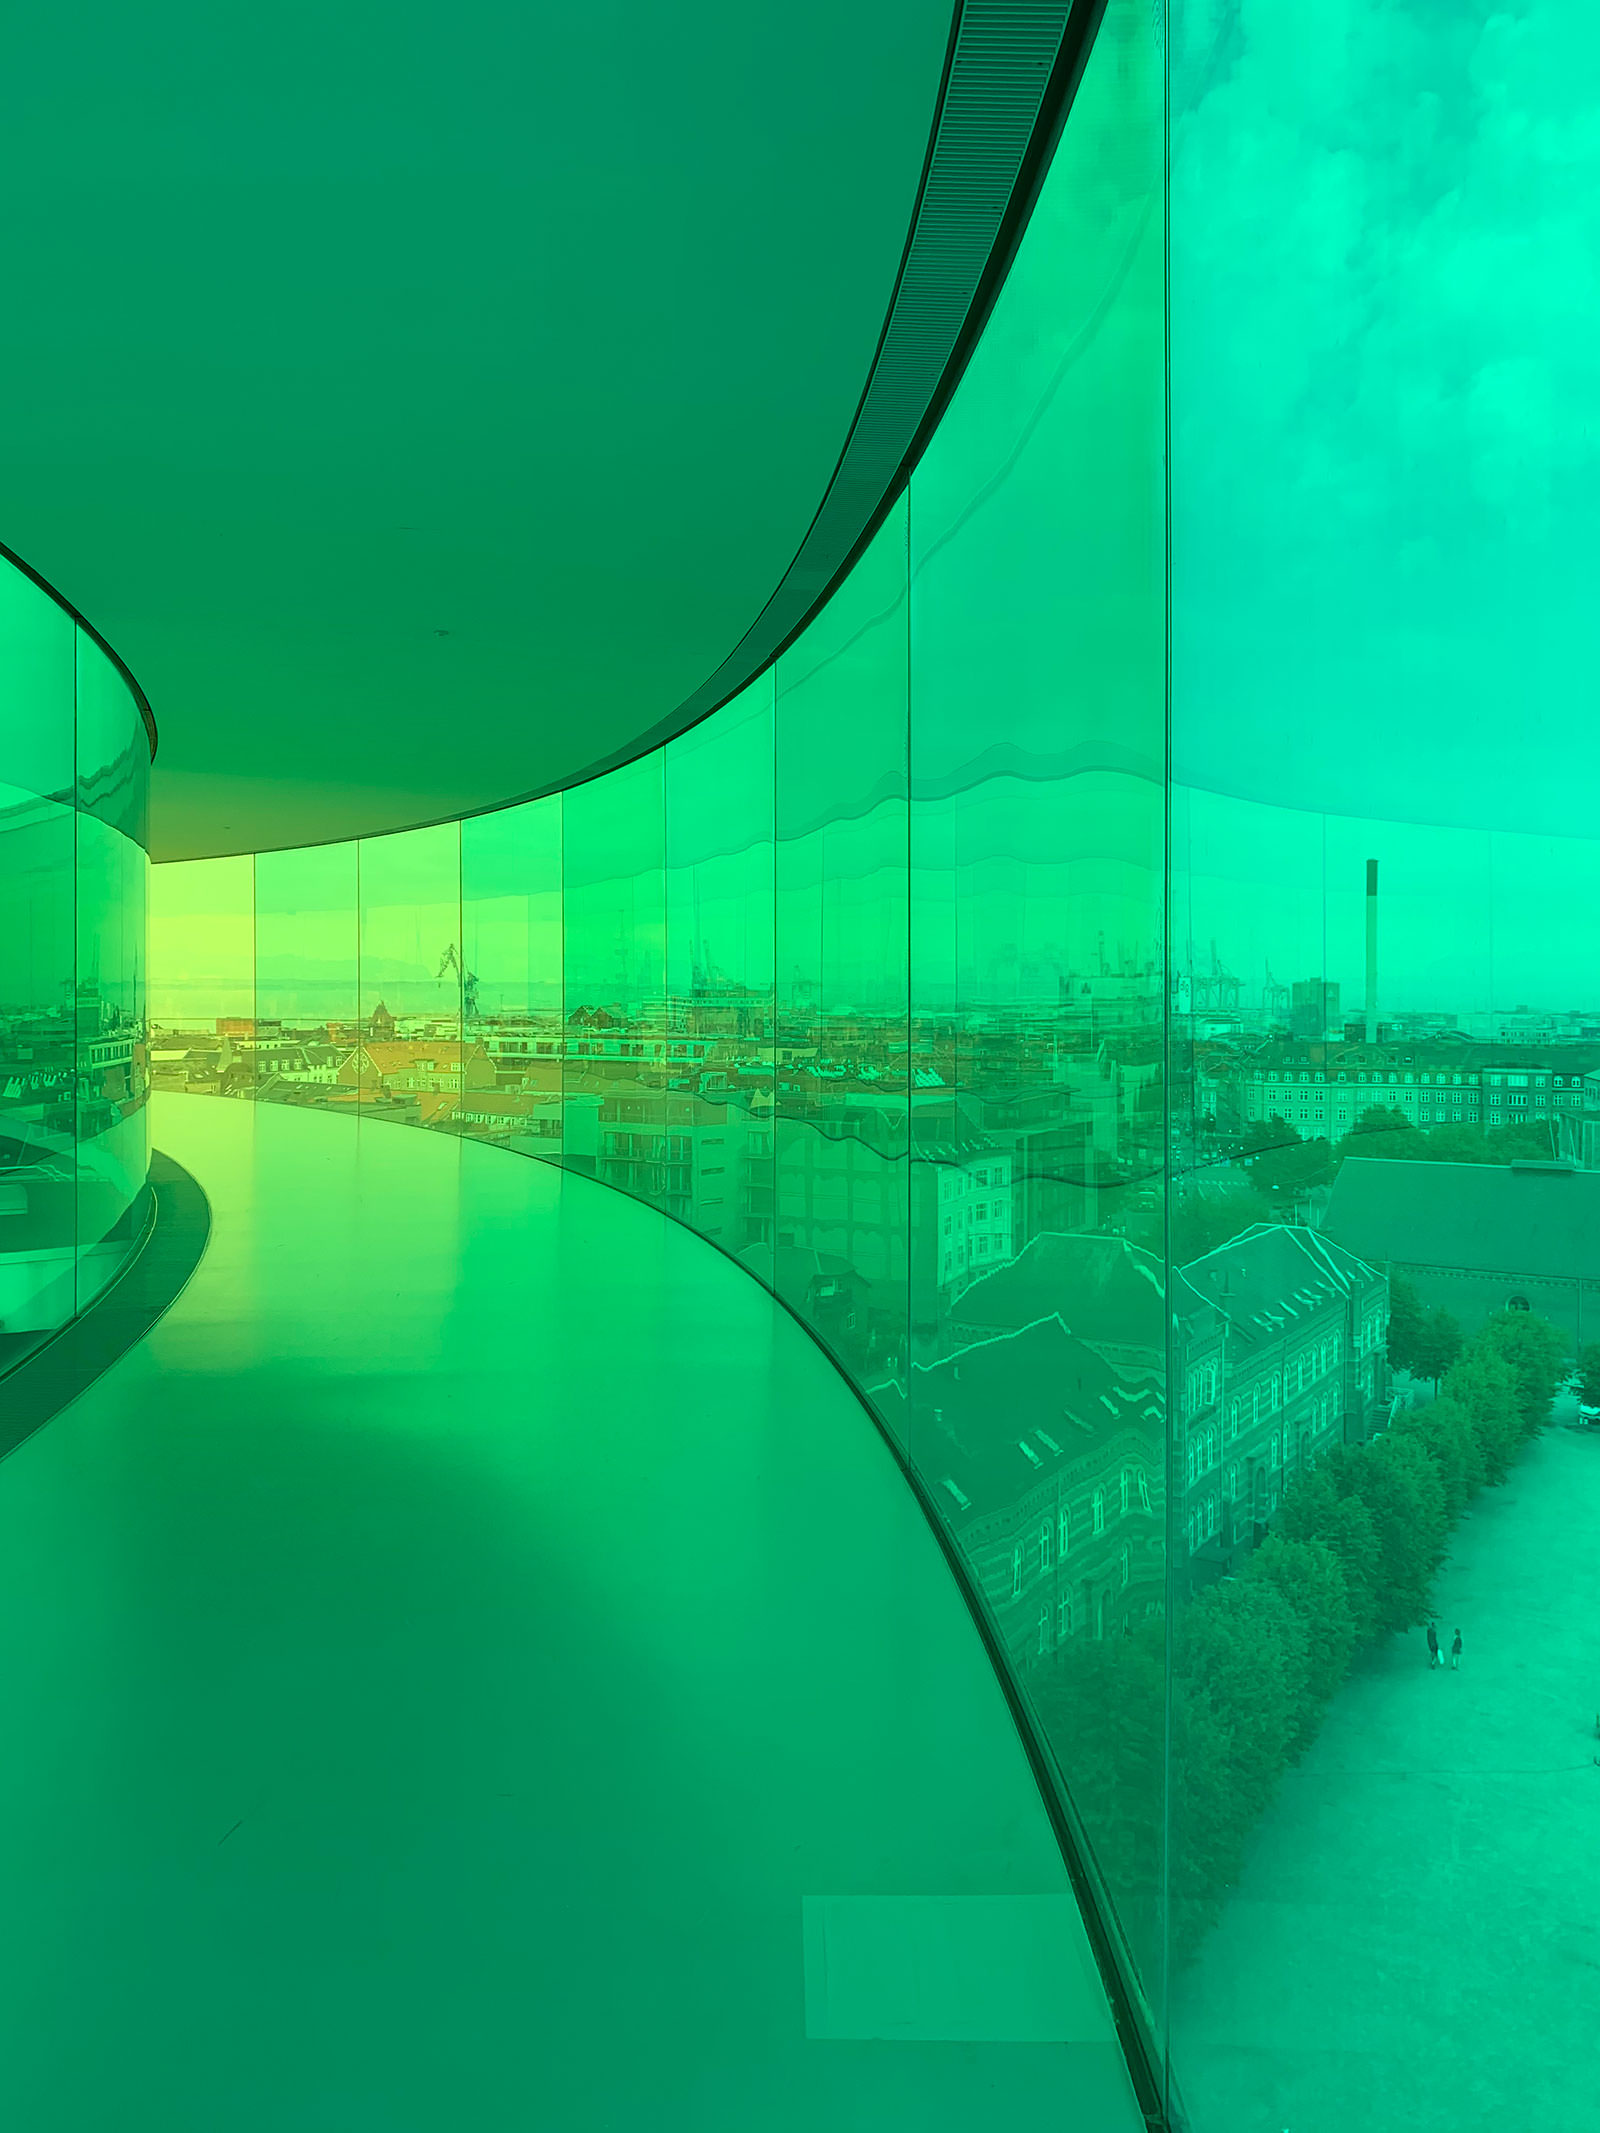 RainbowView, ARoS Aarhus Art Museum, June 2021